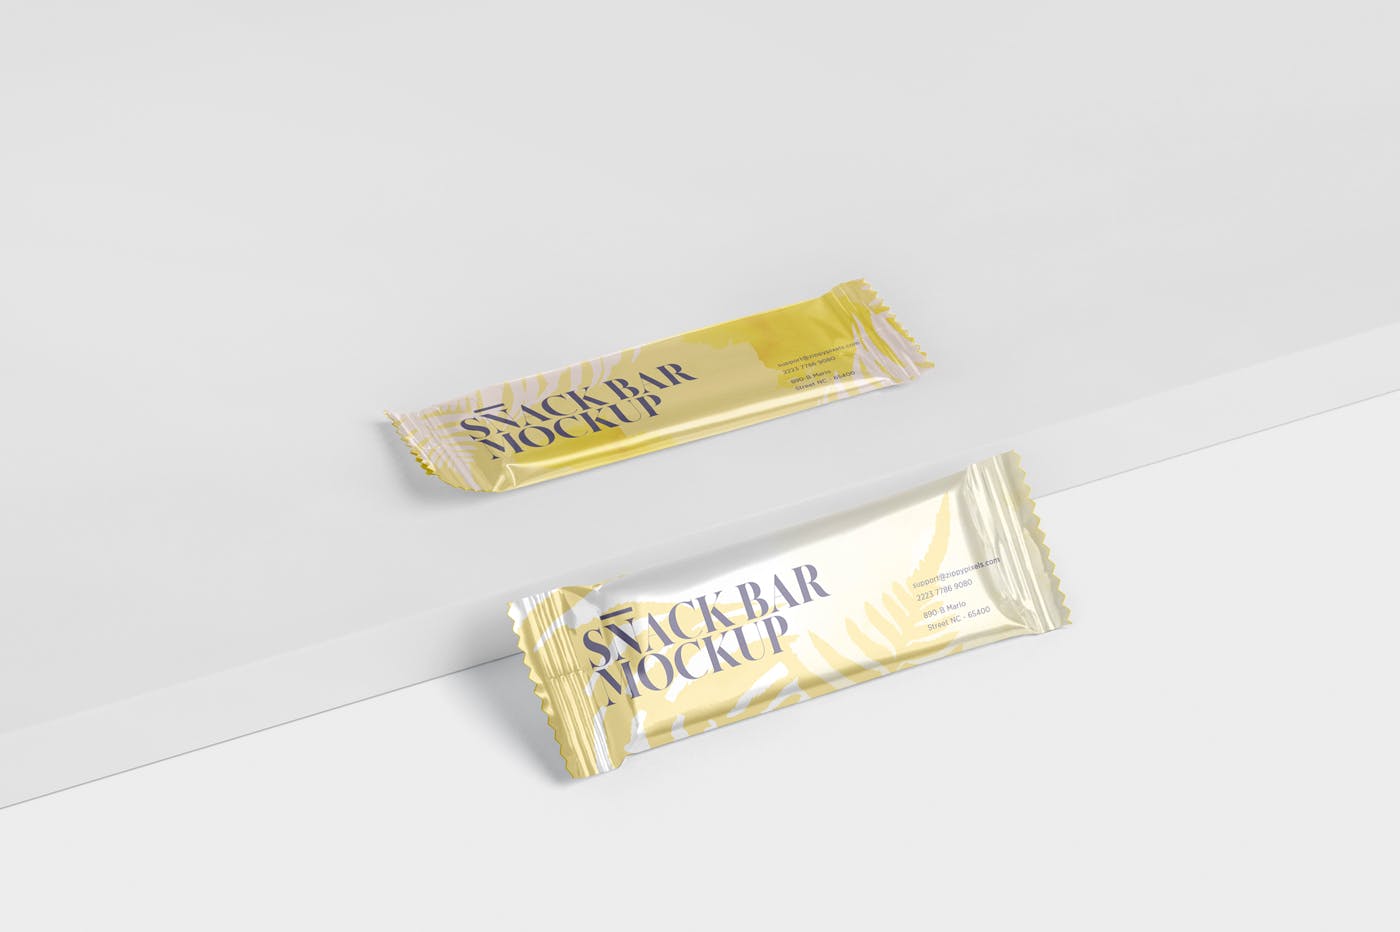 零食糖果包装袋设计效果图第一素材精选 Snack Bar Mockup – Slim Rectangular插图(5)